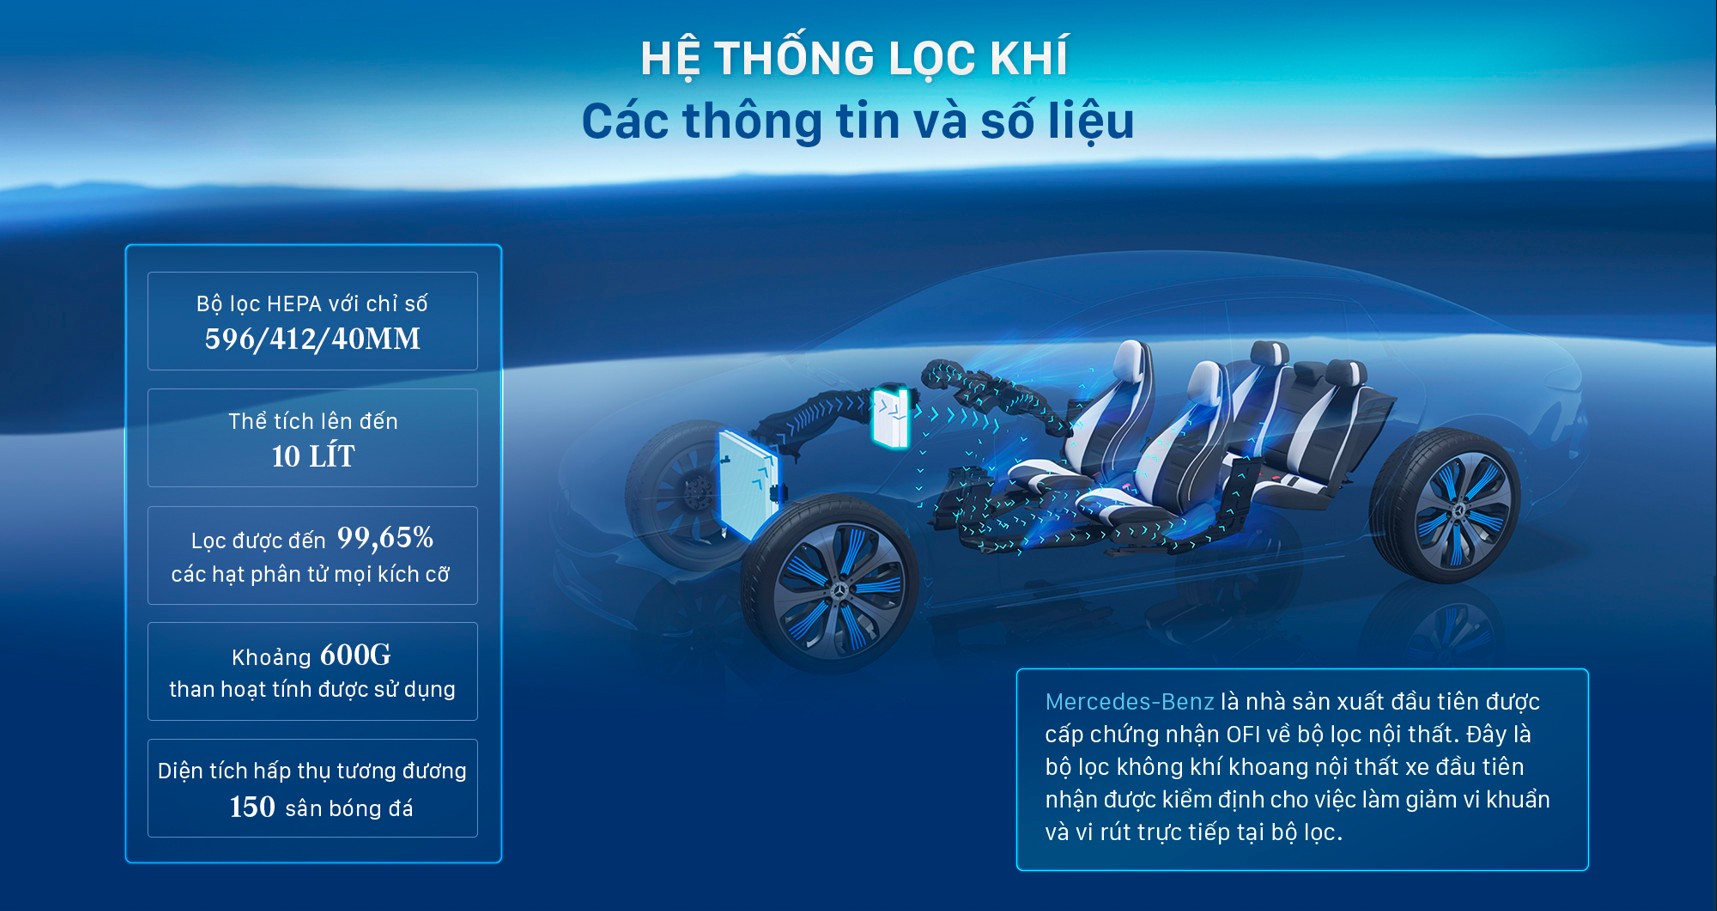 Điểm danh 5 công nghệ hiện đại nhất trên xe Mercedes-Benz tại Việt Nam - Ảnh 2.